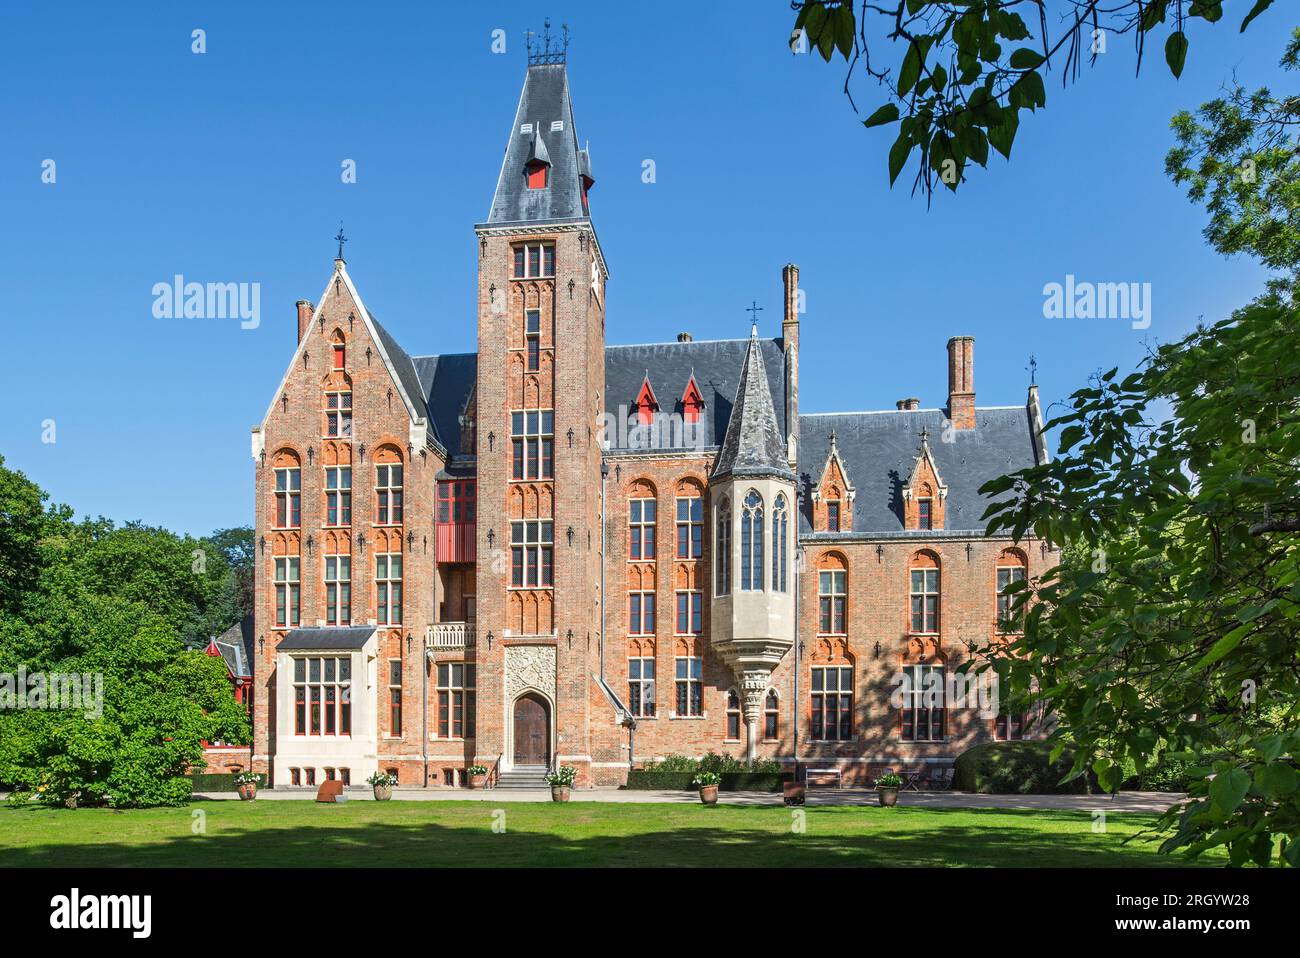 Castello di Loppem / Kasteel van Loppem in estate, rievocazione gotica del XIX secolo / residenza neogotica a Zedelgem vicino a Bruges nelle Fiandre occidentali, Belgio Foto Stock